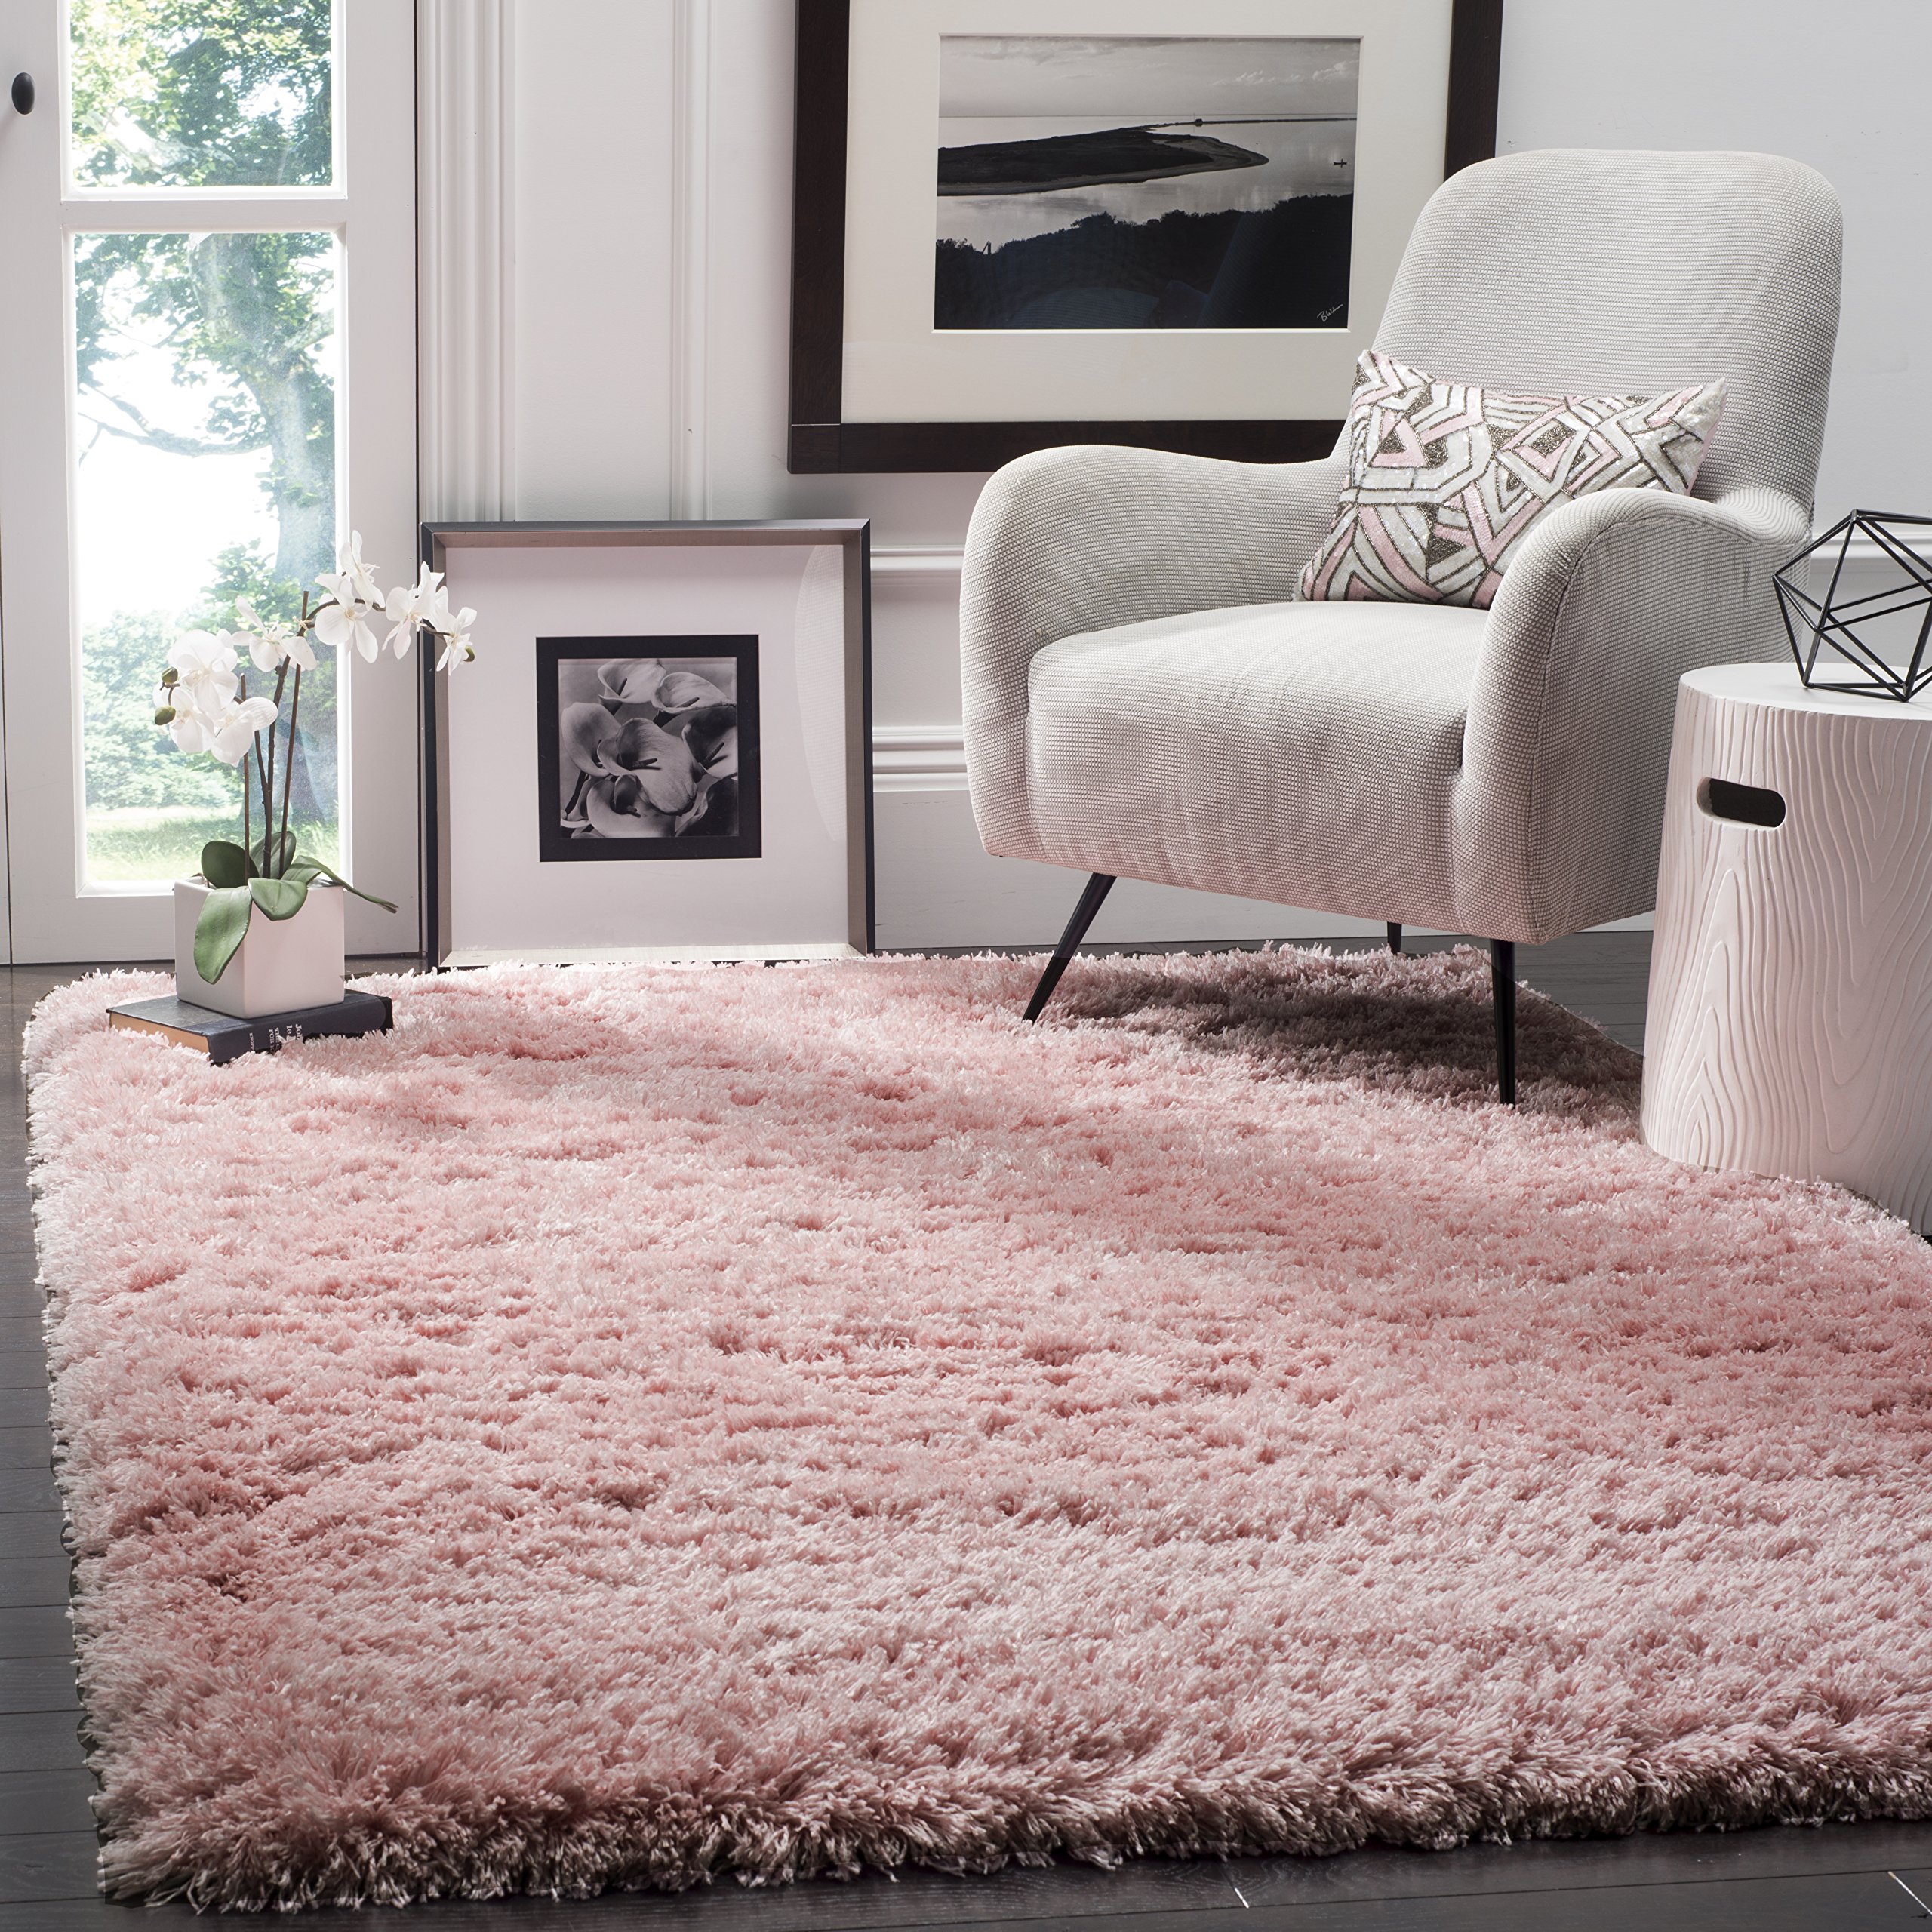  Safavieh Polar Shag 系列特色地毯 - 4 英寸 x 6 英寸，浅粉色，纯色迷人设计，不脱落且易于护理，3 英寸厚，非常适合入口、客厅、卧室的人流密集区域...